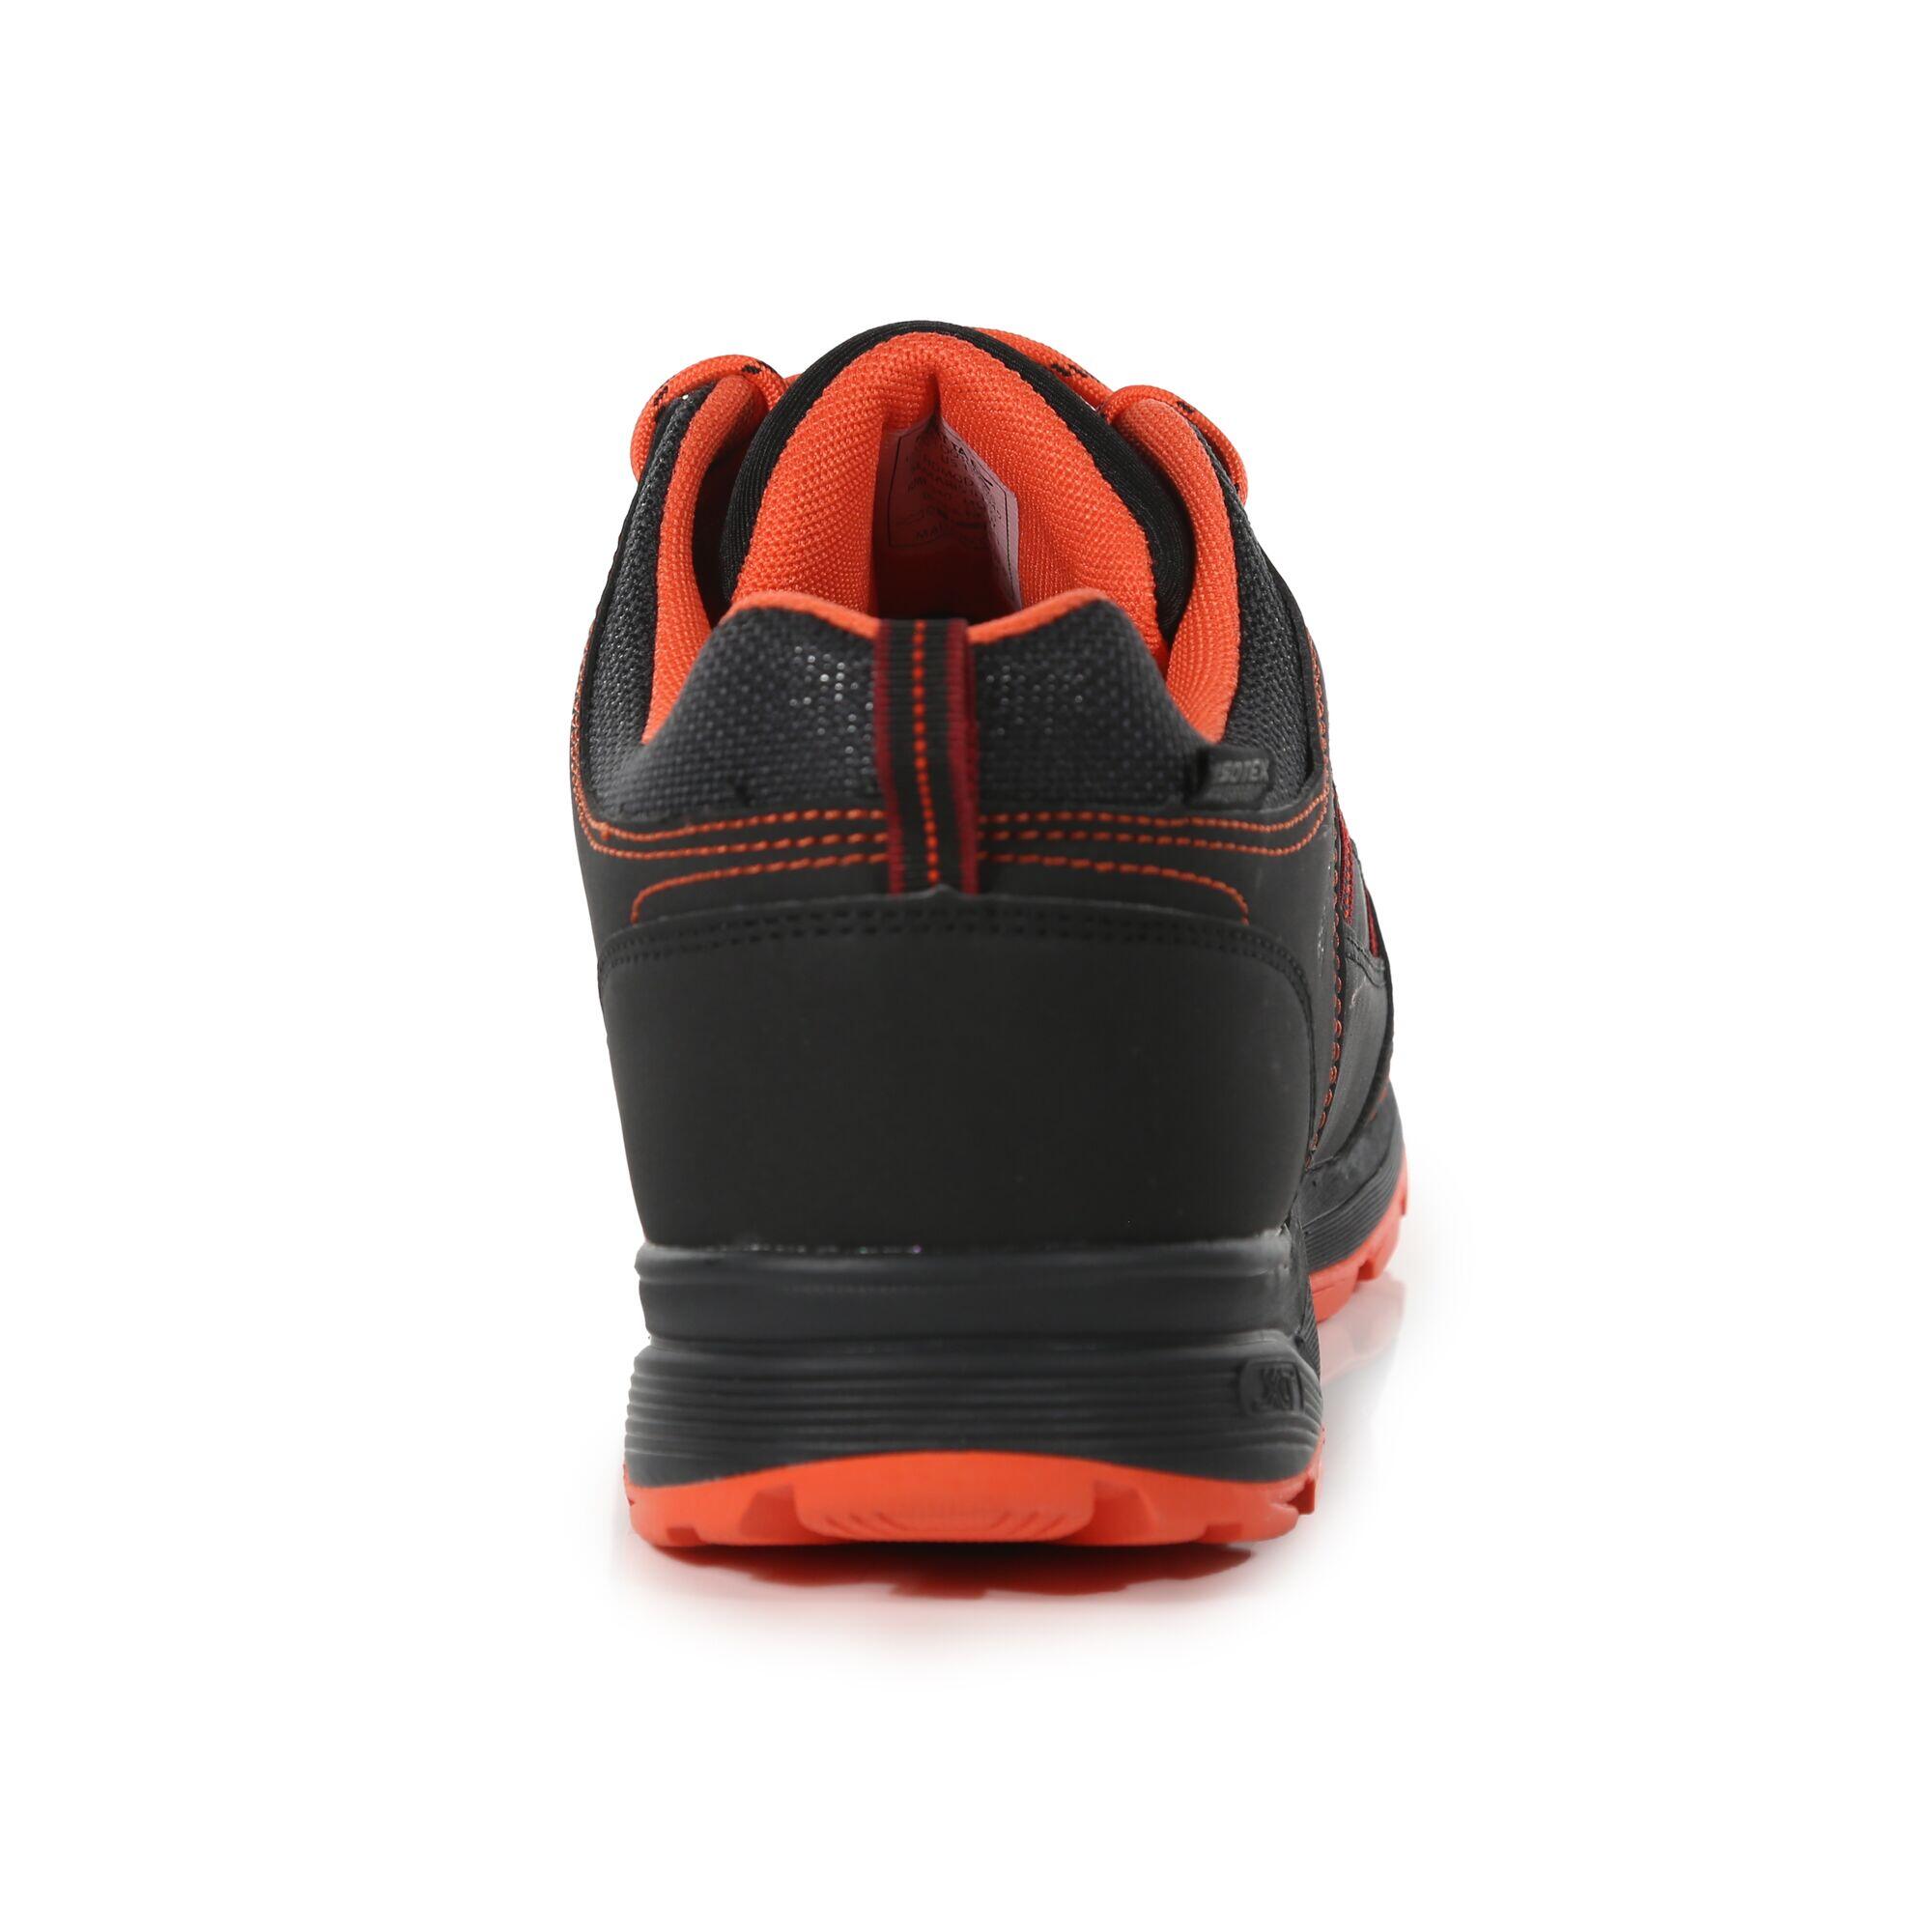 Samaris II Men's Hiking Shoes - Black/Red 4/6